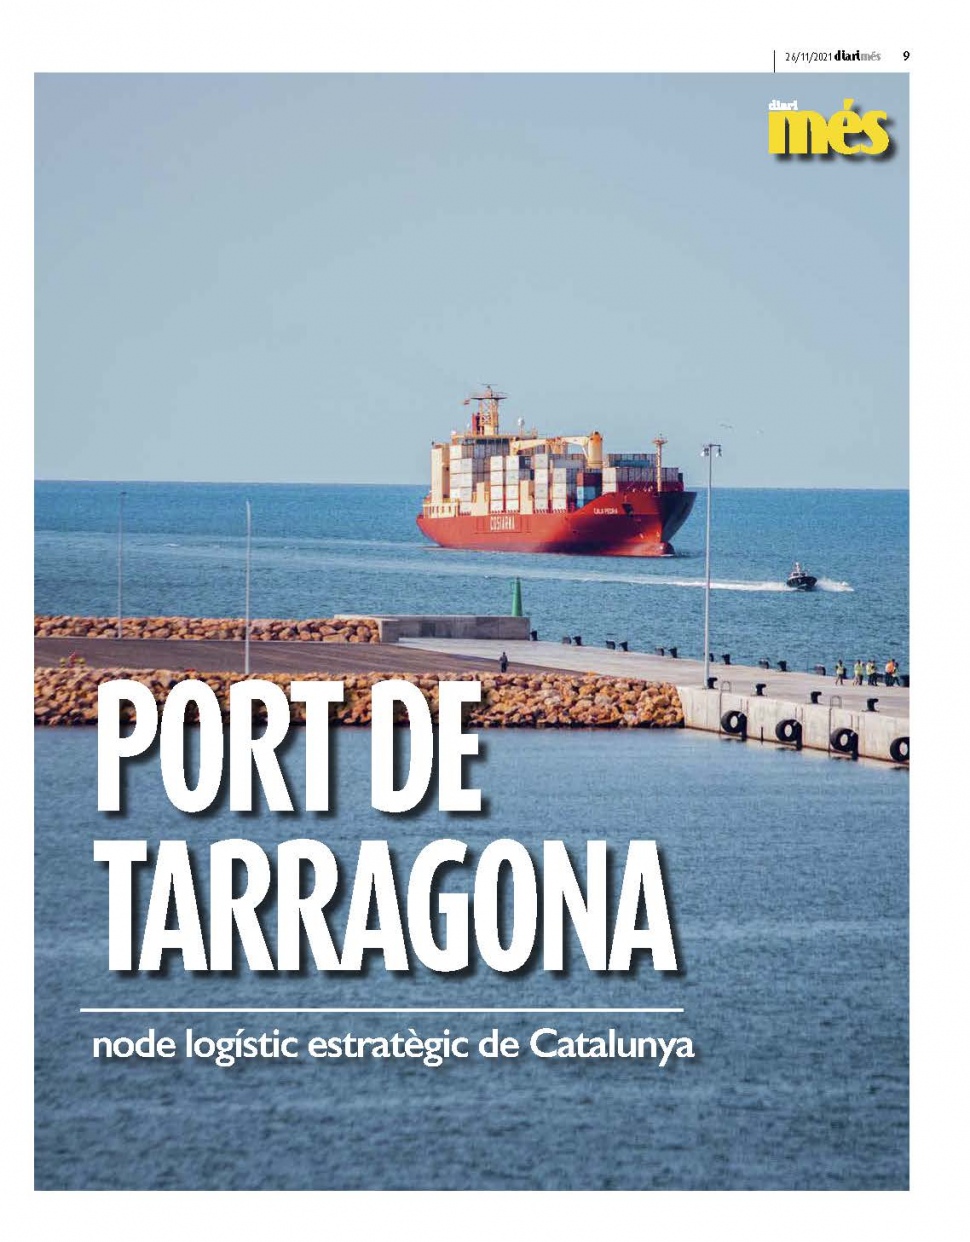 Port de Tarragona, node logístic estratègic de Catalunya - Especial Més Tarragona